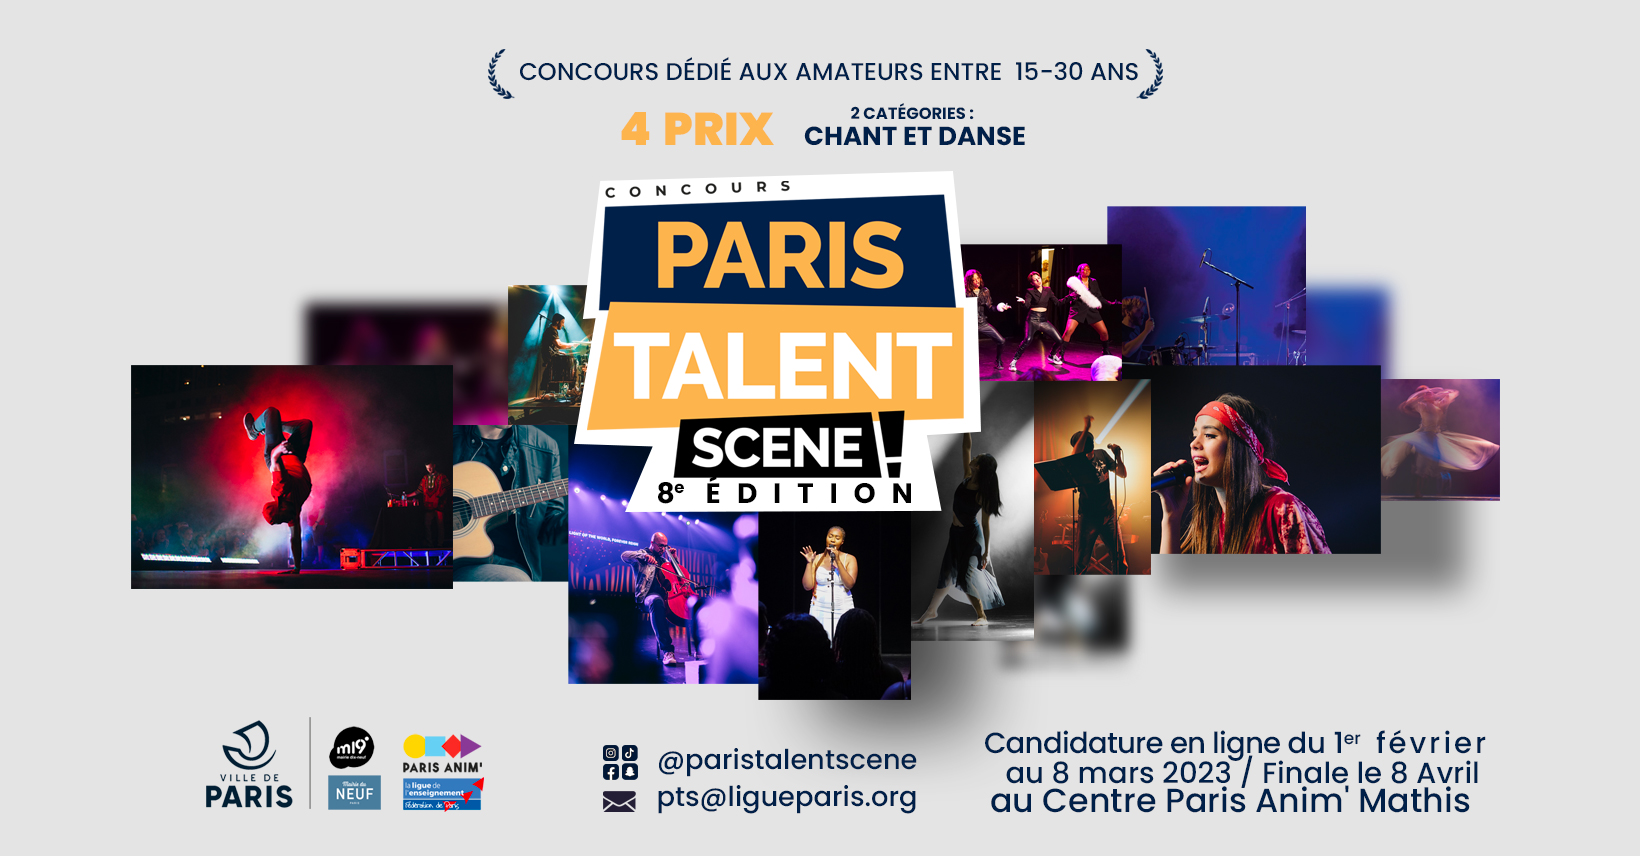 Bannière Paris Talent Scène : des photos entremêlée de chanteurs et de danseurs